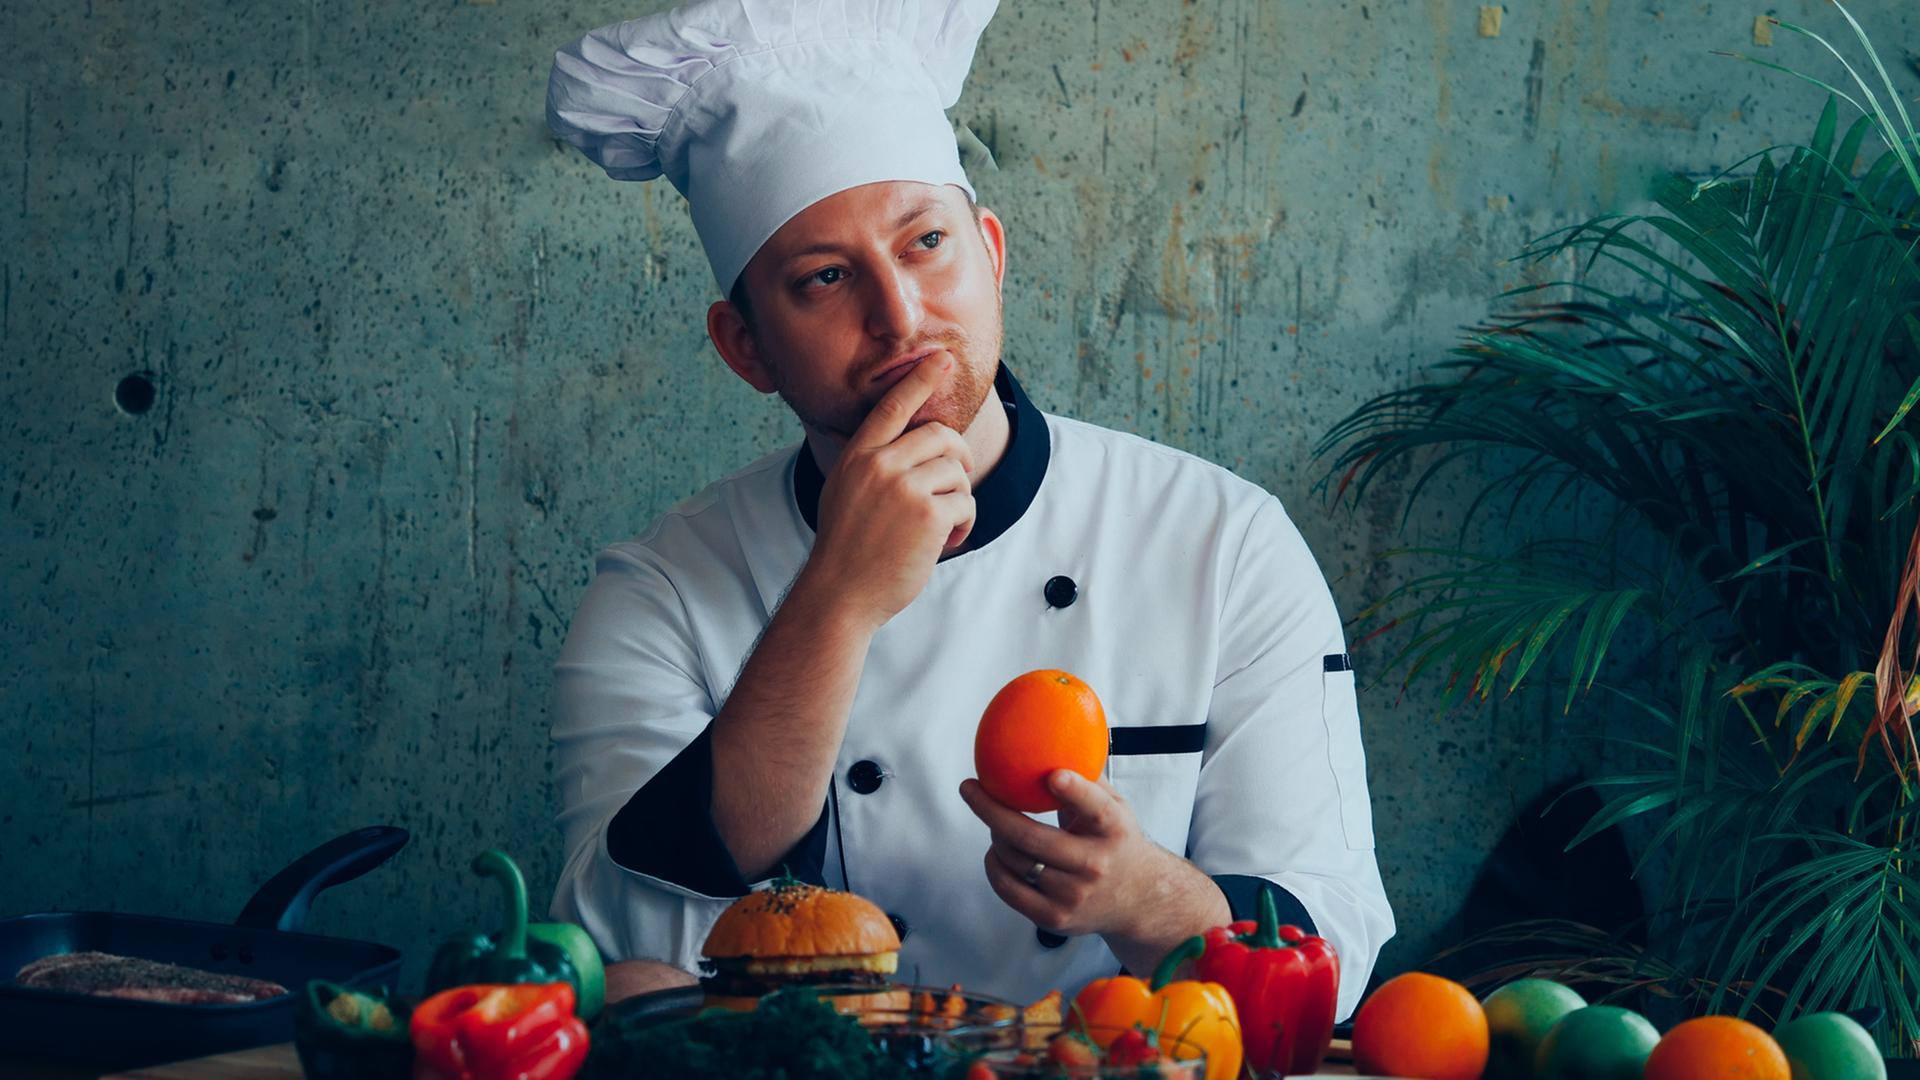 Ein junge Mann mit einer Kochmütze sitzt an einem Tisch, vor sich Obst und Gemüse. In der einen Hand hält er eine Orange, die andere Hand liegt an seinem Kinn.